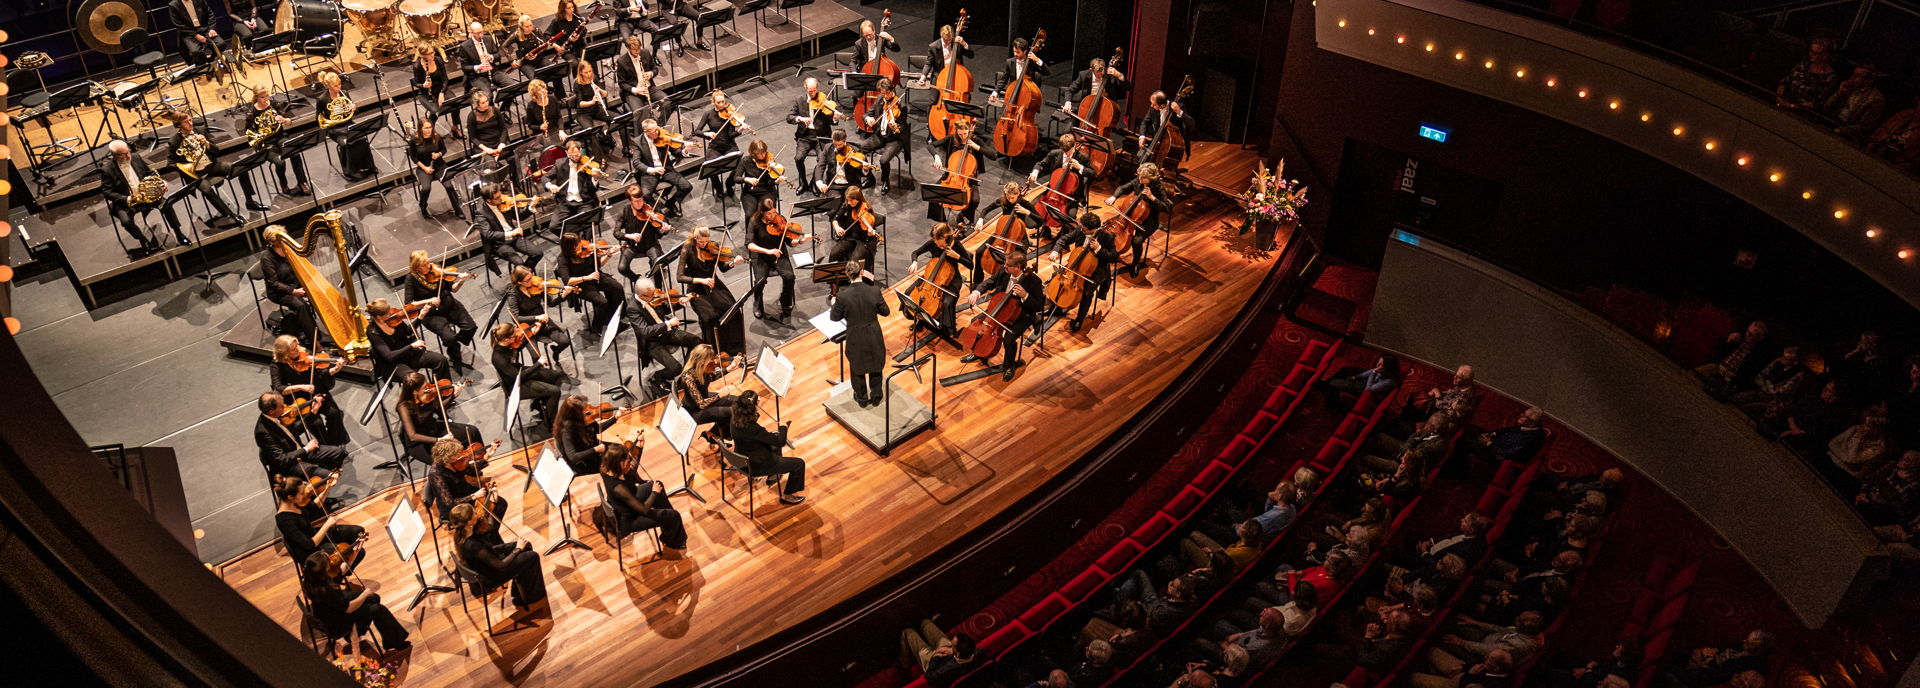 De orkestbak van de Tamboerzaal is uitermate geschikt bij grote orkesten en gezelschappen